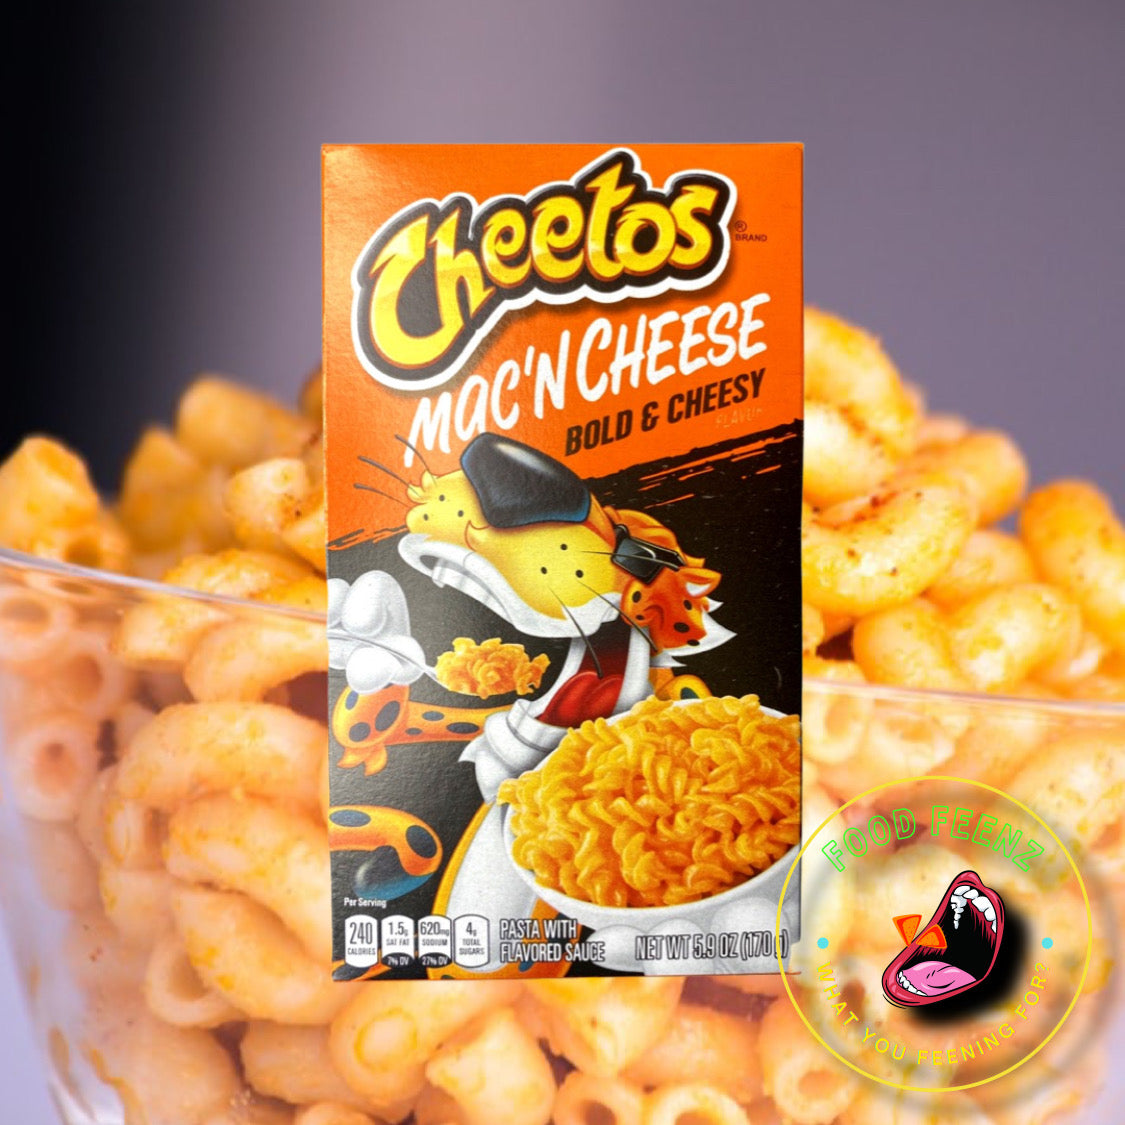 Cheetos Mac N Cheese Bold & Cheesy